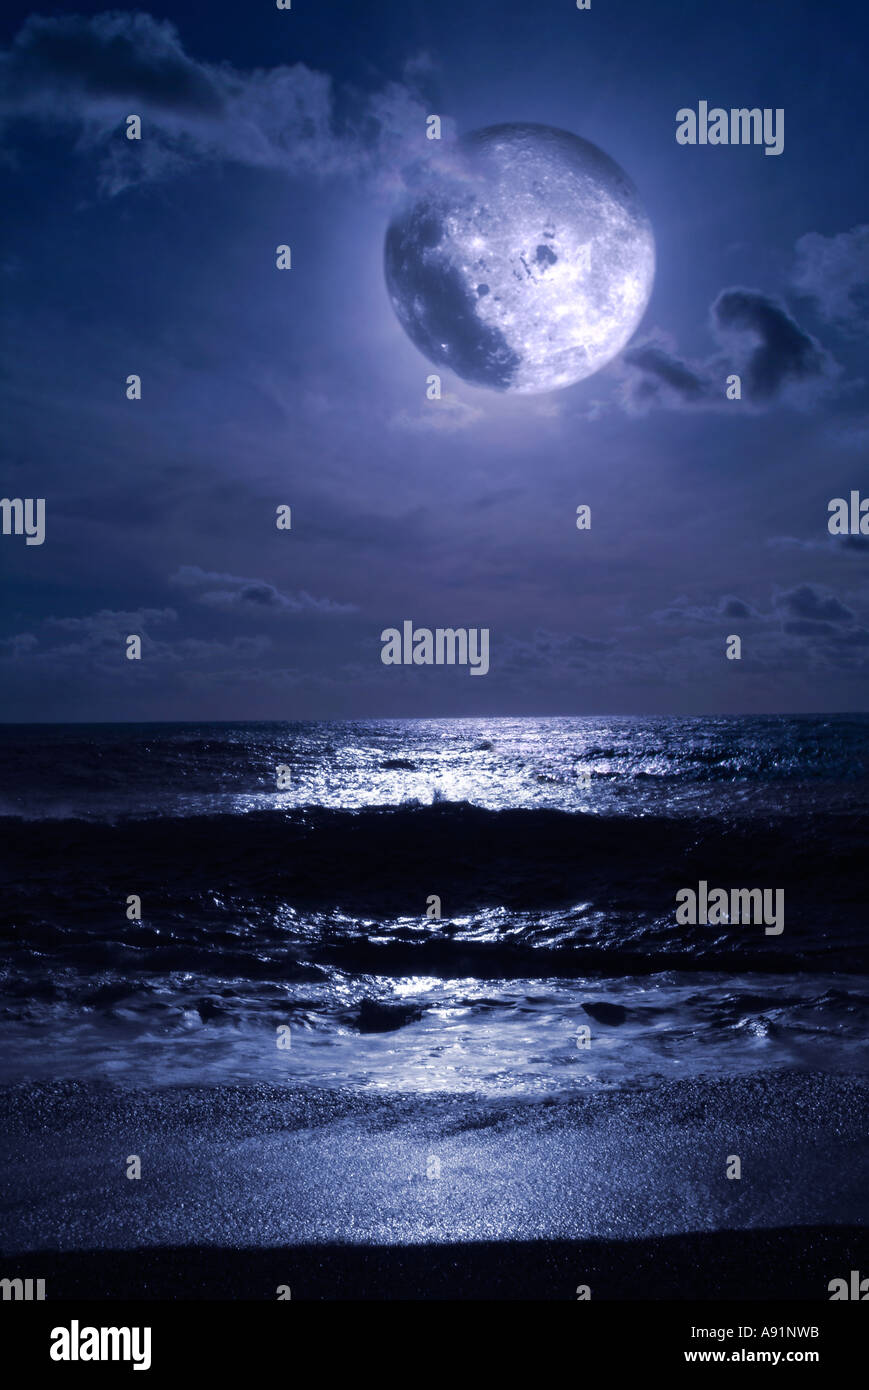 La luna llena y el mar Vollmond und Meer Foto de stock